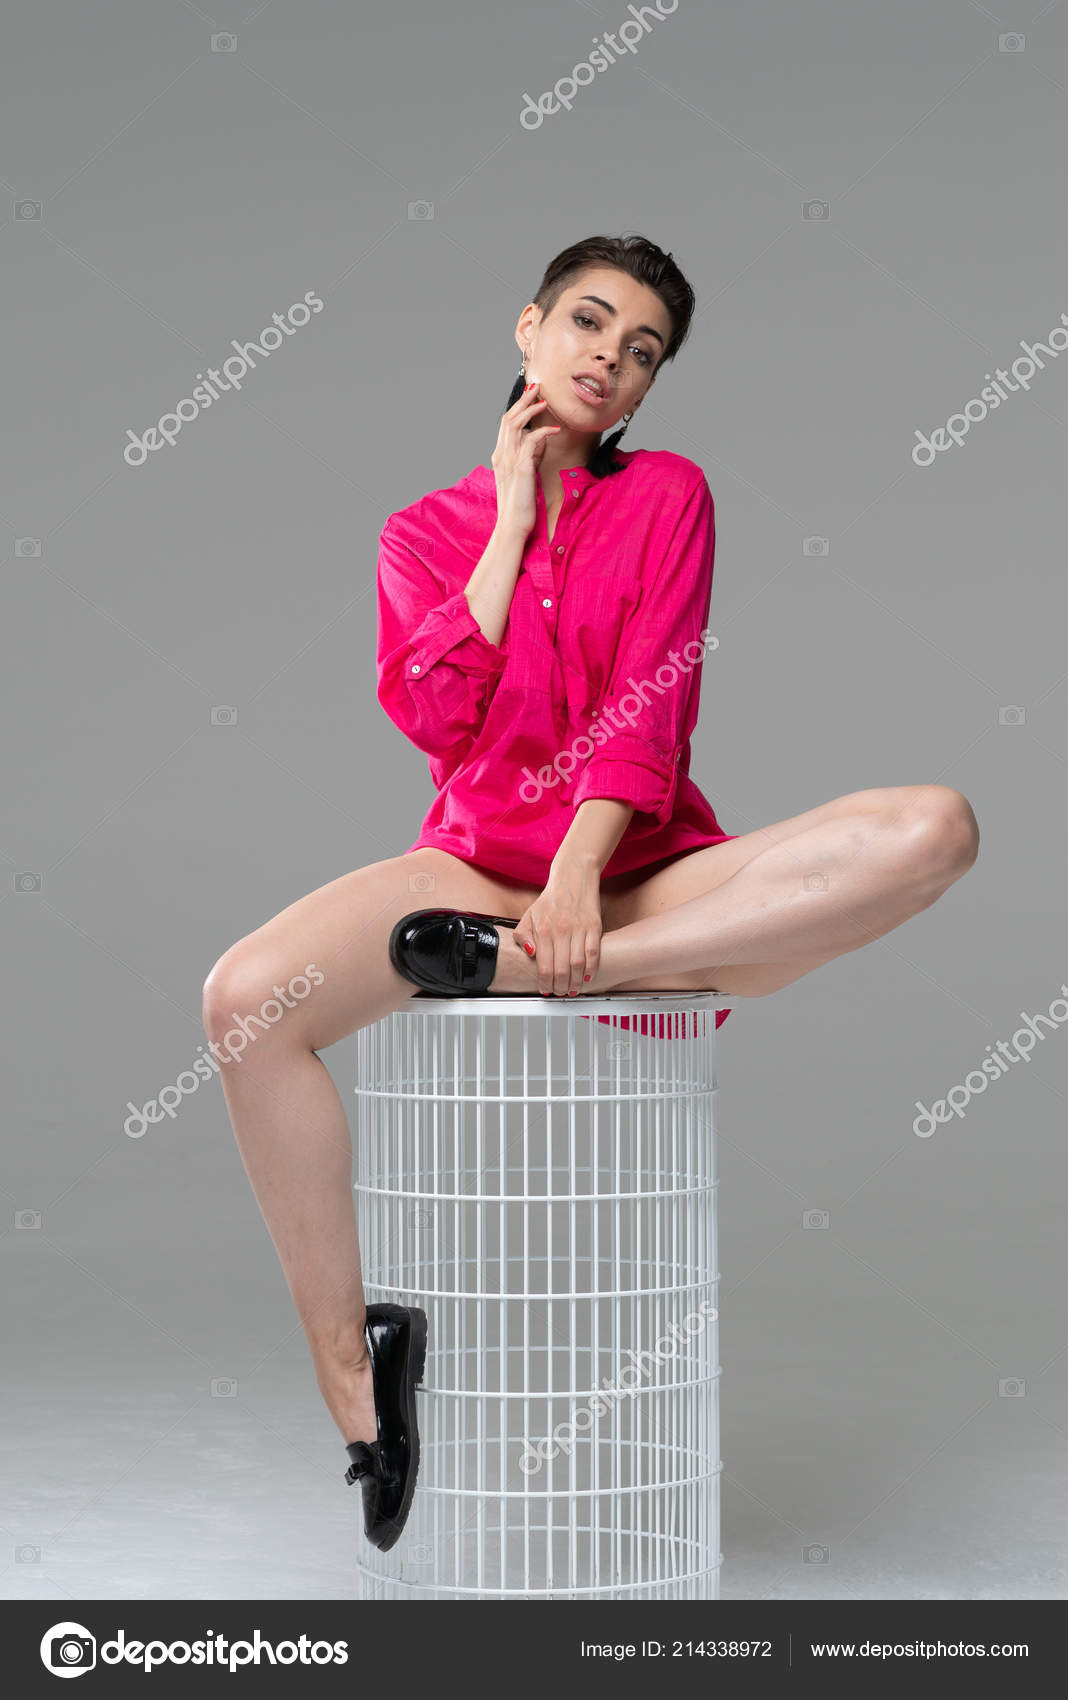 https://st4.depositphotos.com/10086424/21433/i/1600/depositphotos_214338972-stock-photo-young-beautiful-girl-posing-studio.jpg